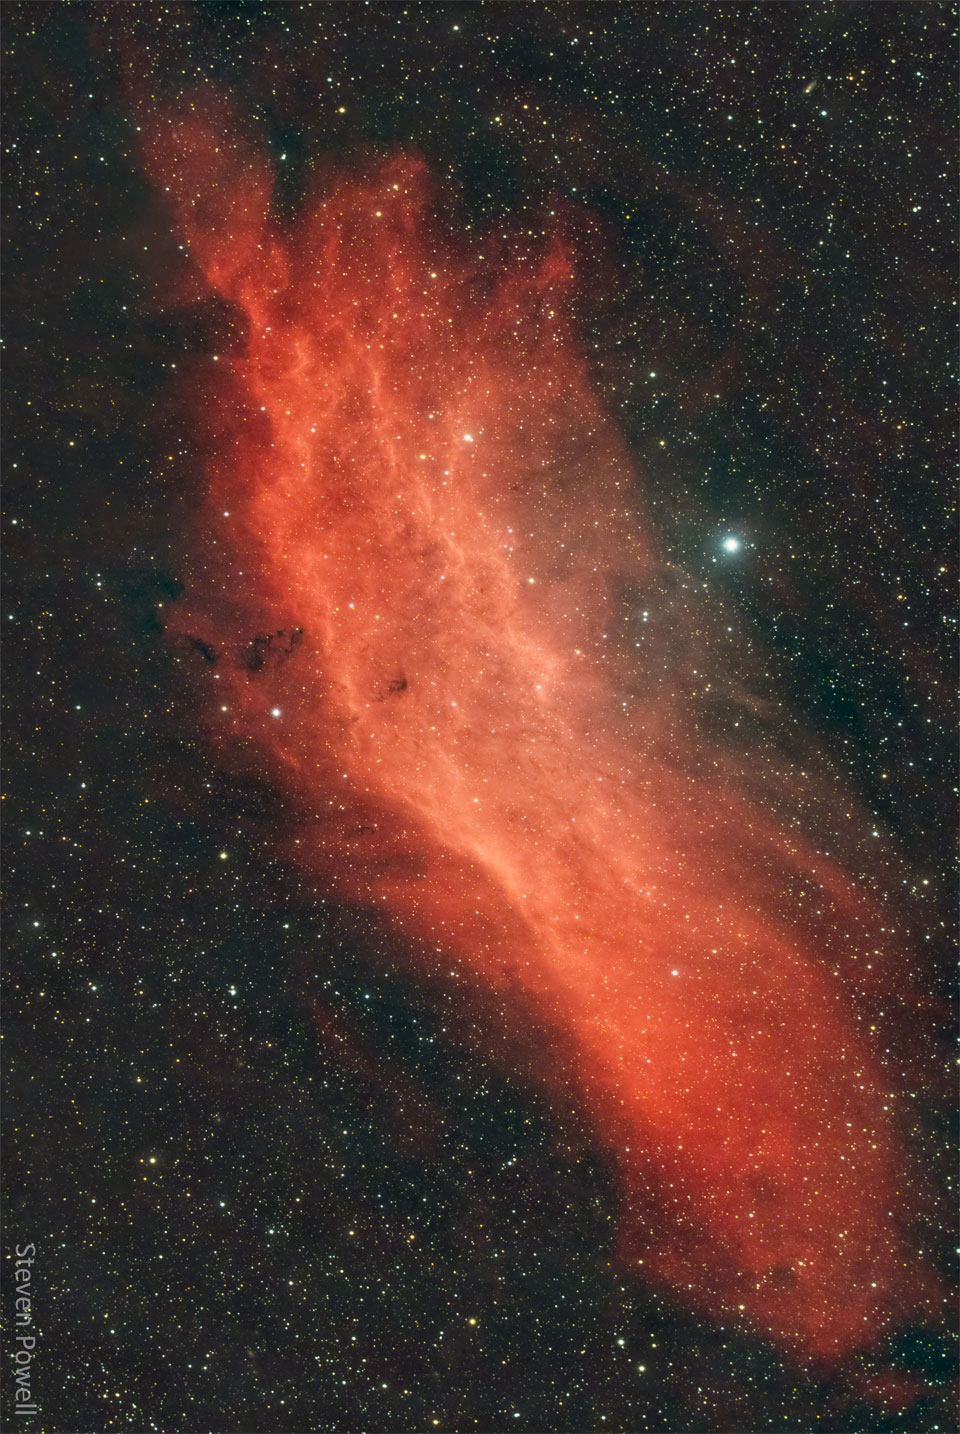 A red gaseous nebula is shown in front of a dark starfield.
The shape of the nebula resembles the US state of California.
Więcej szczegółowych informacji w opisie poniżej.